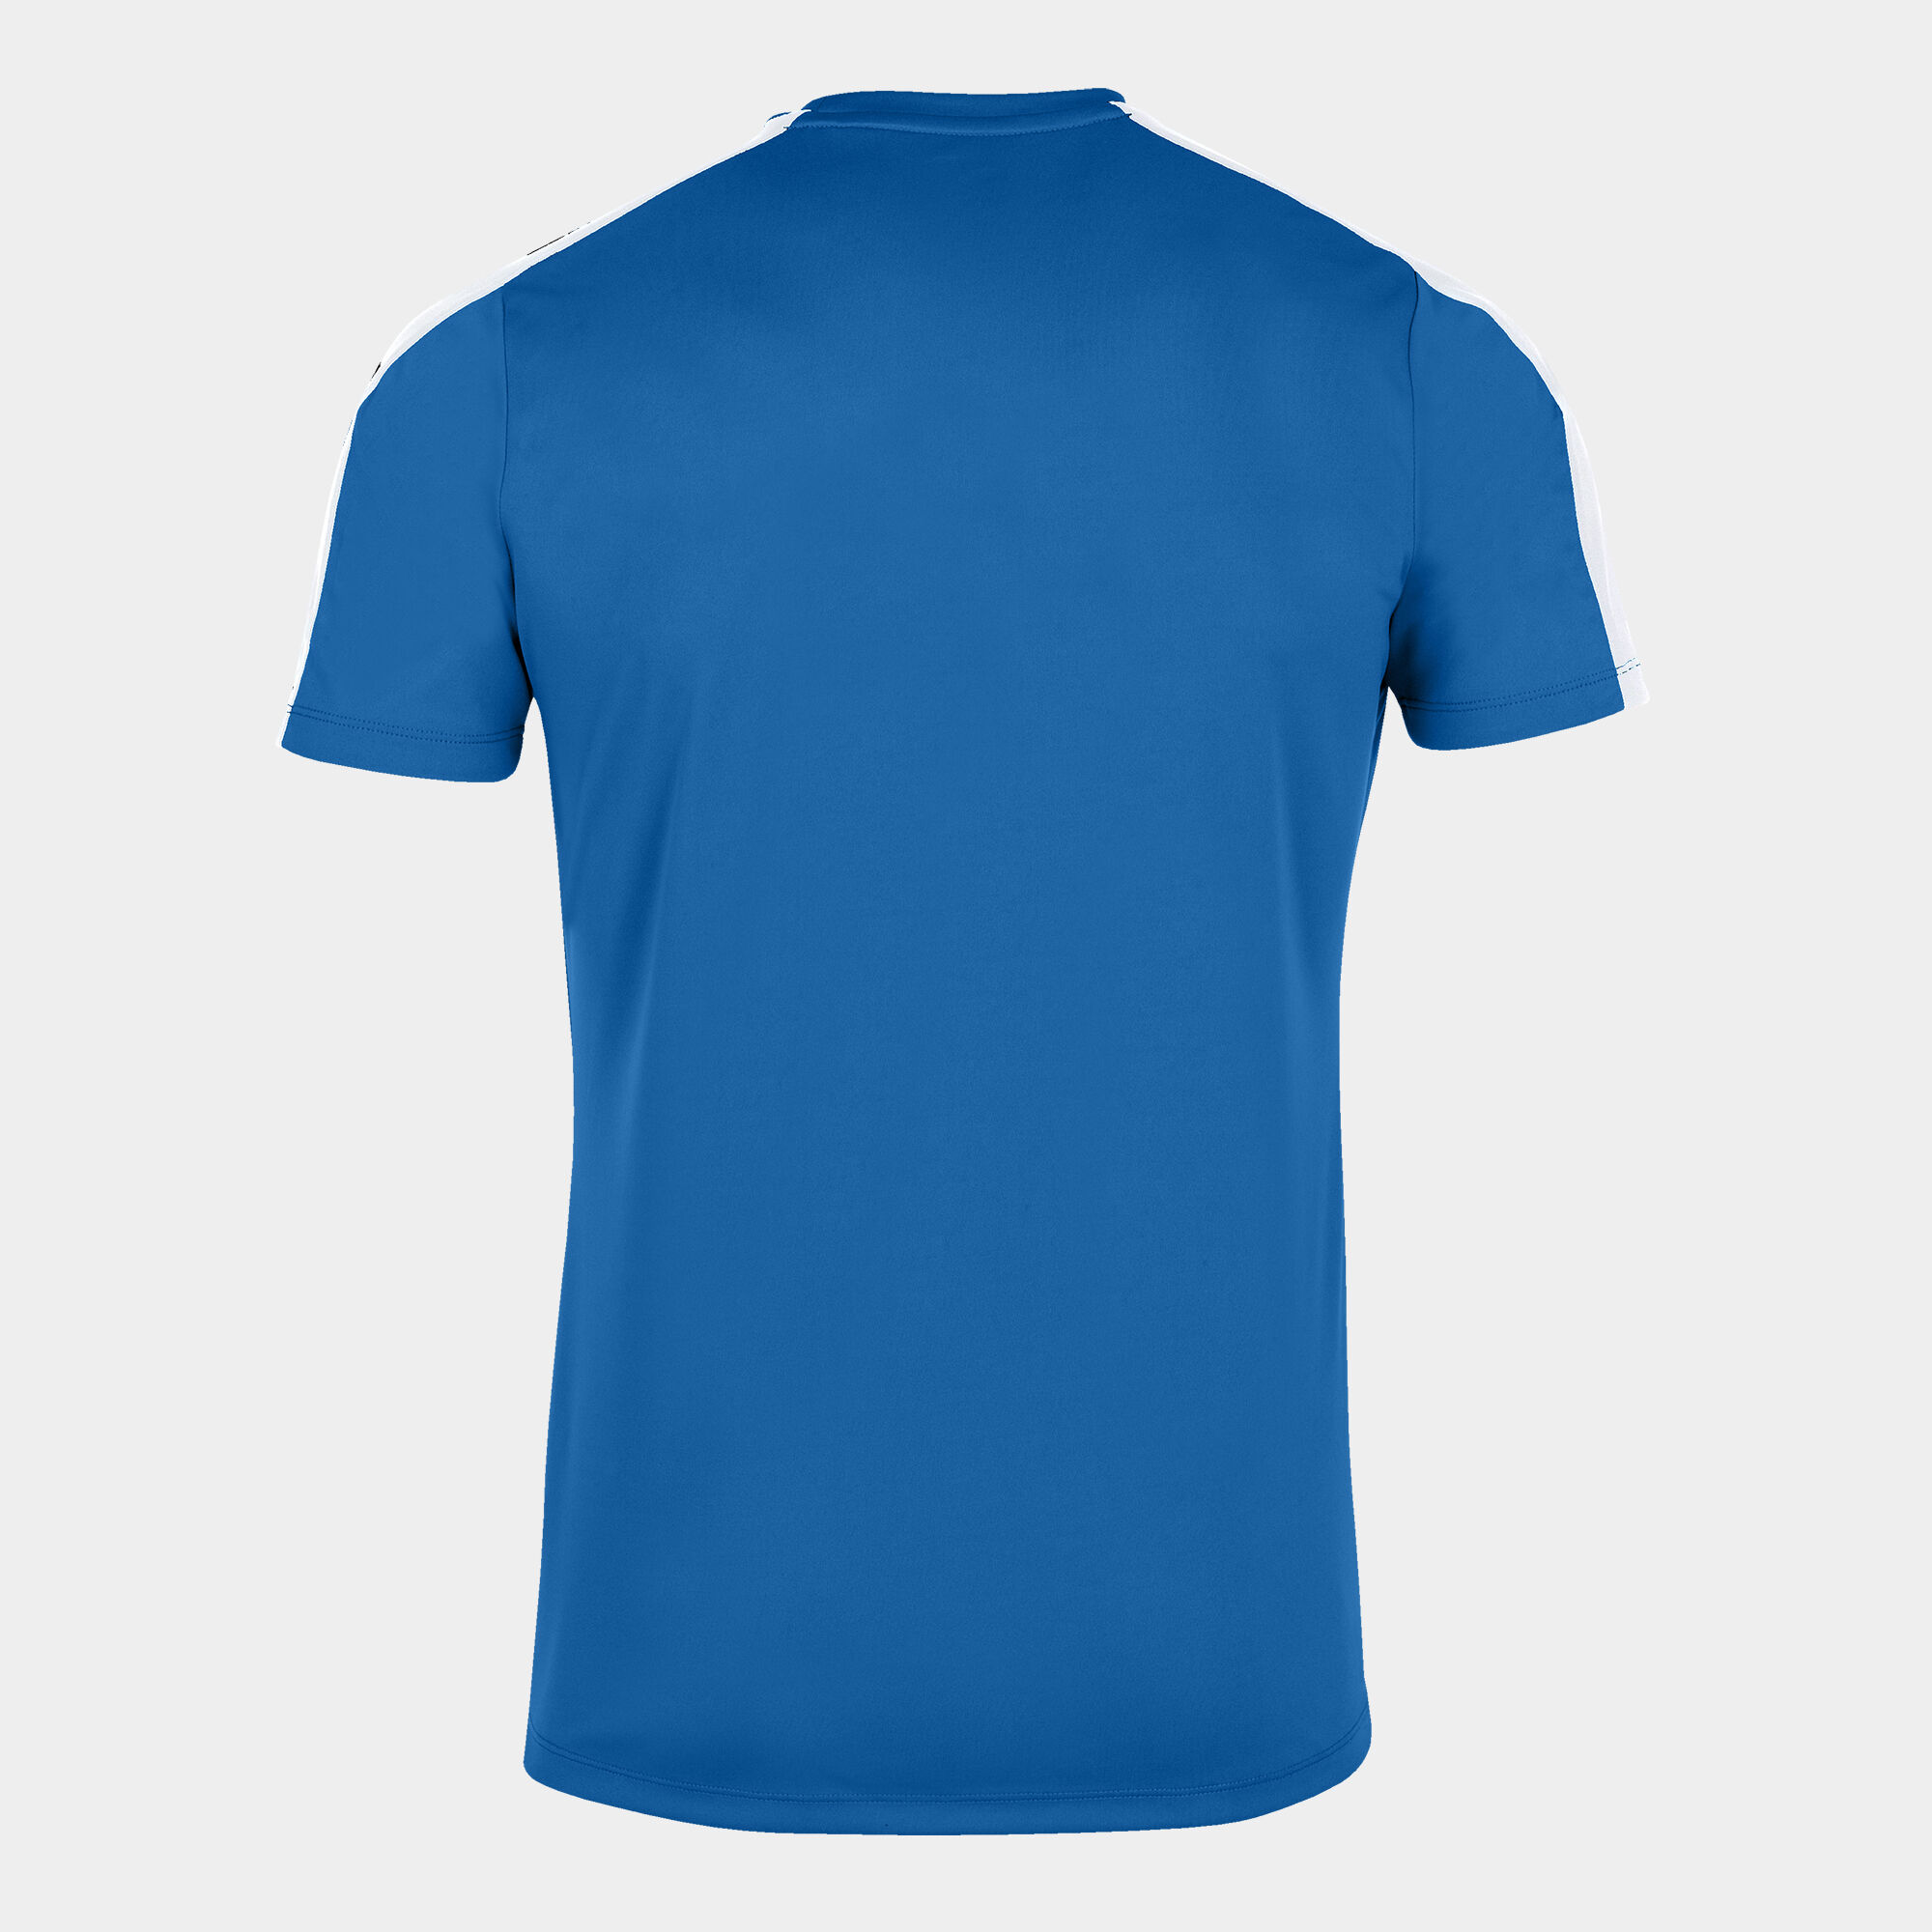 Koszulka z krótkim rękawem mężczyźni Academy III niebieski royal bialy